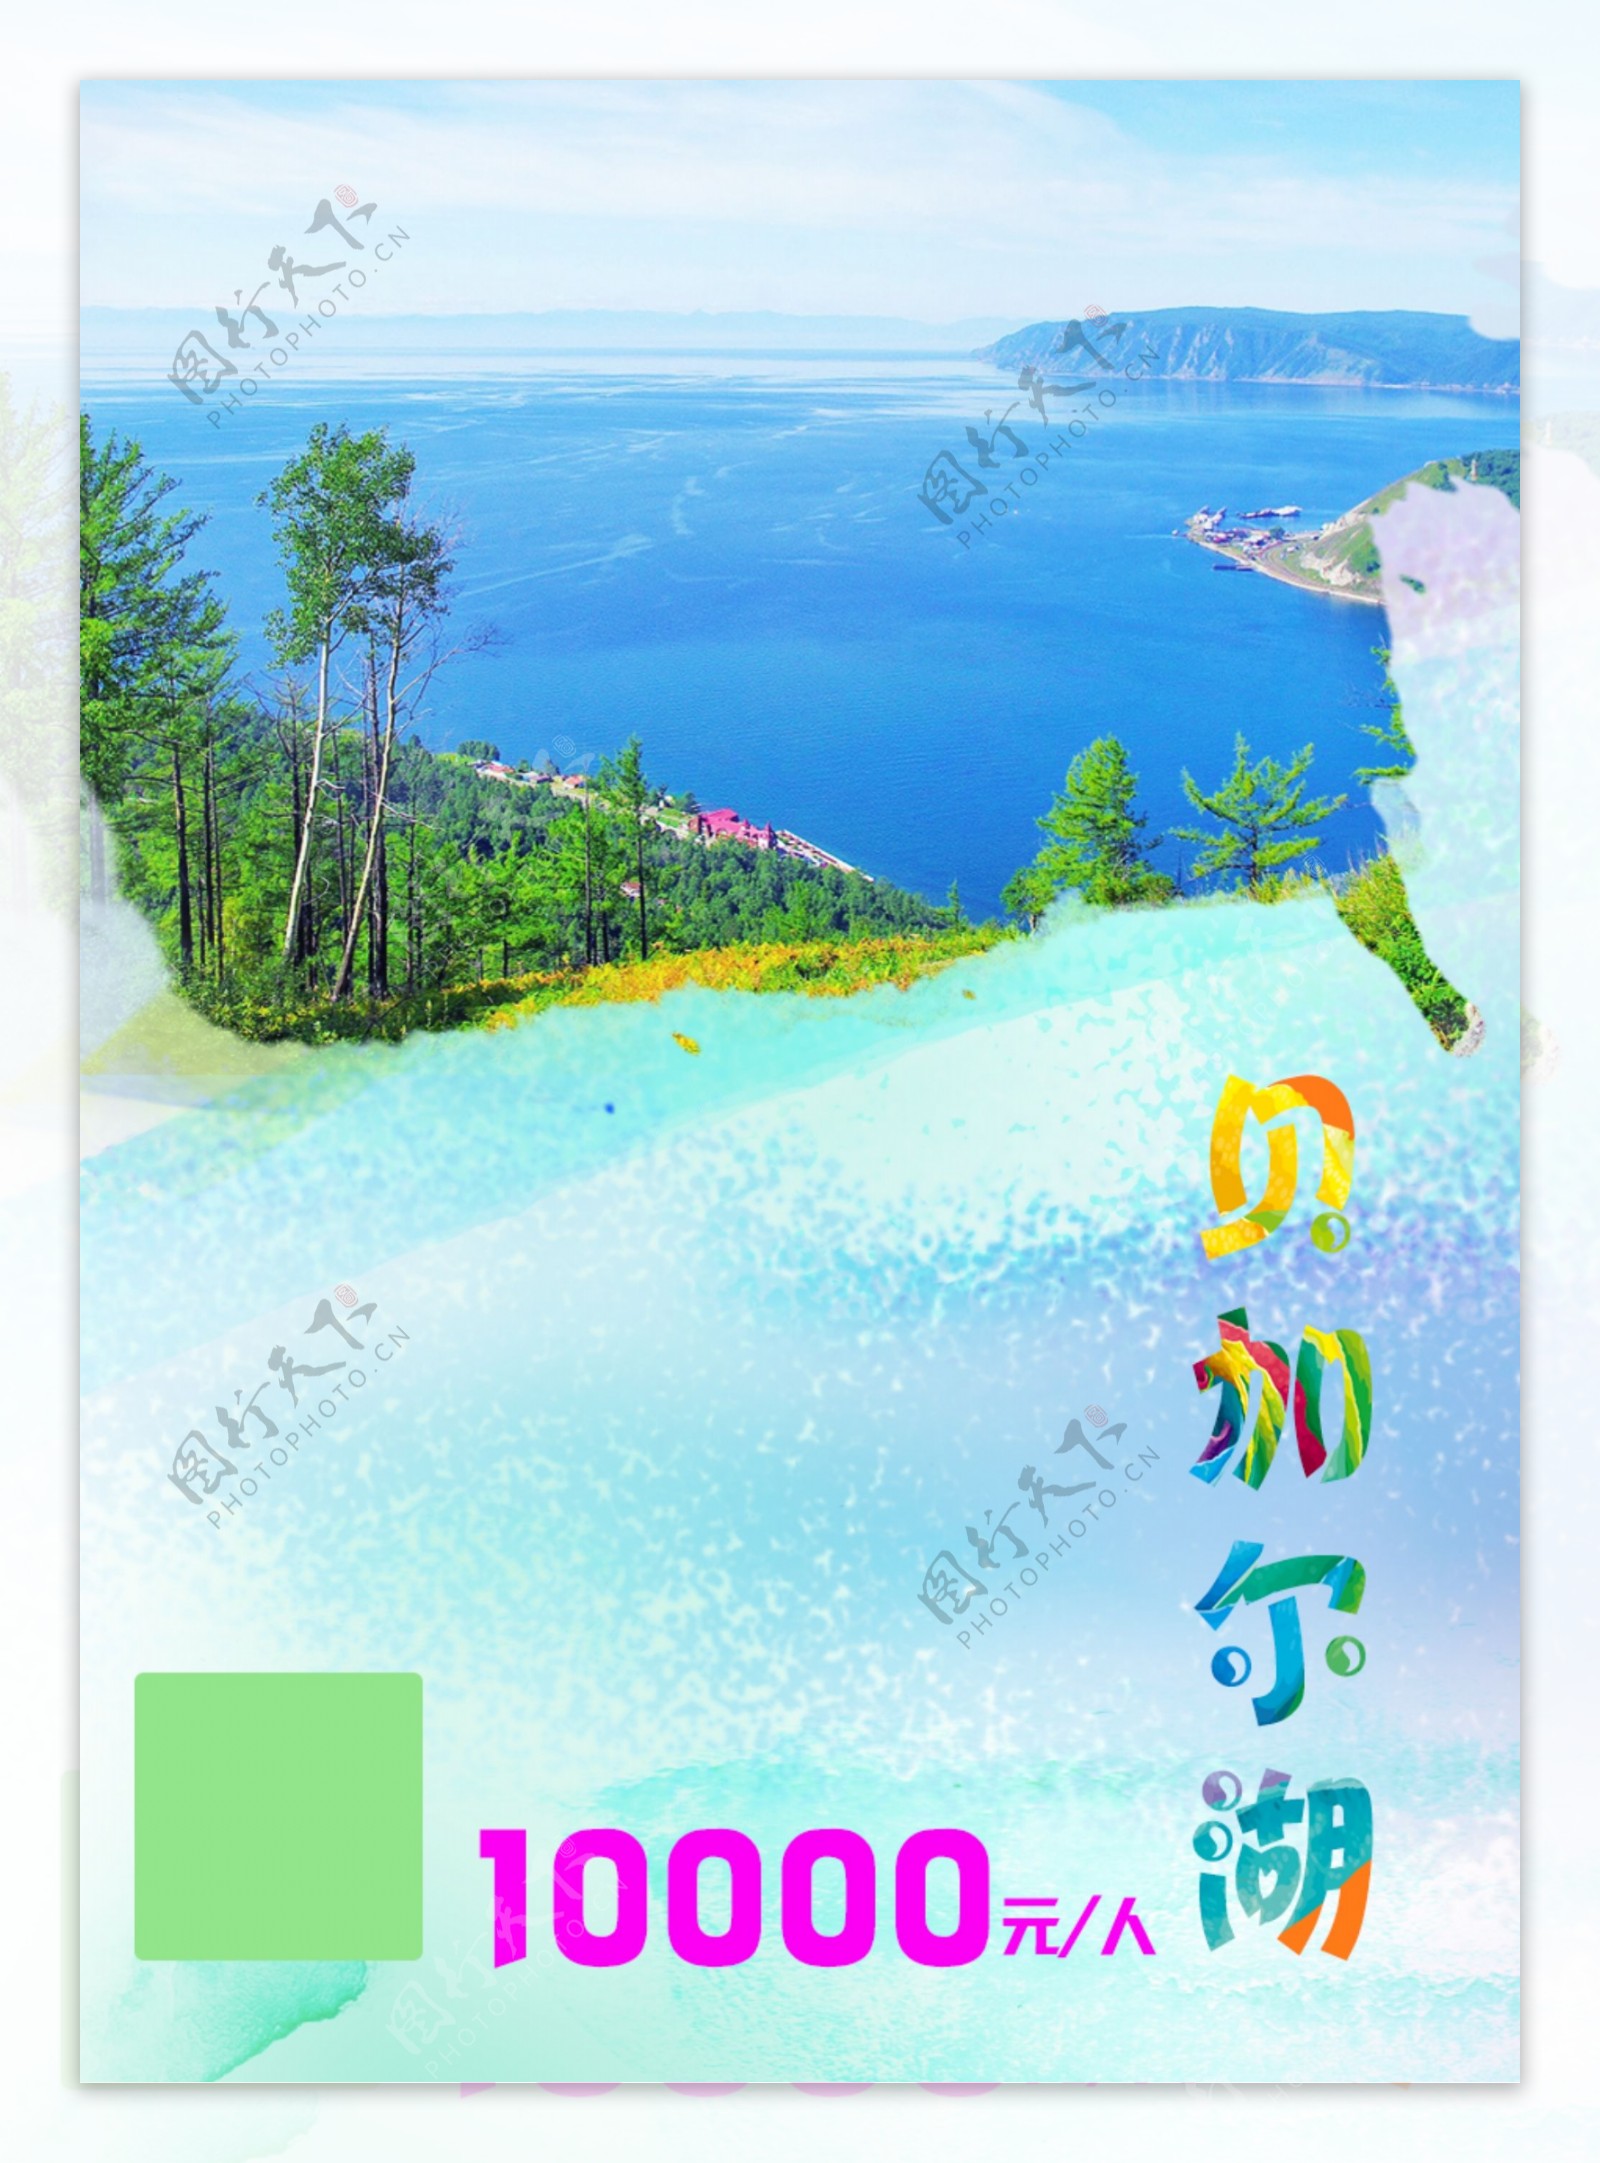 贝加尔湖旅游海报